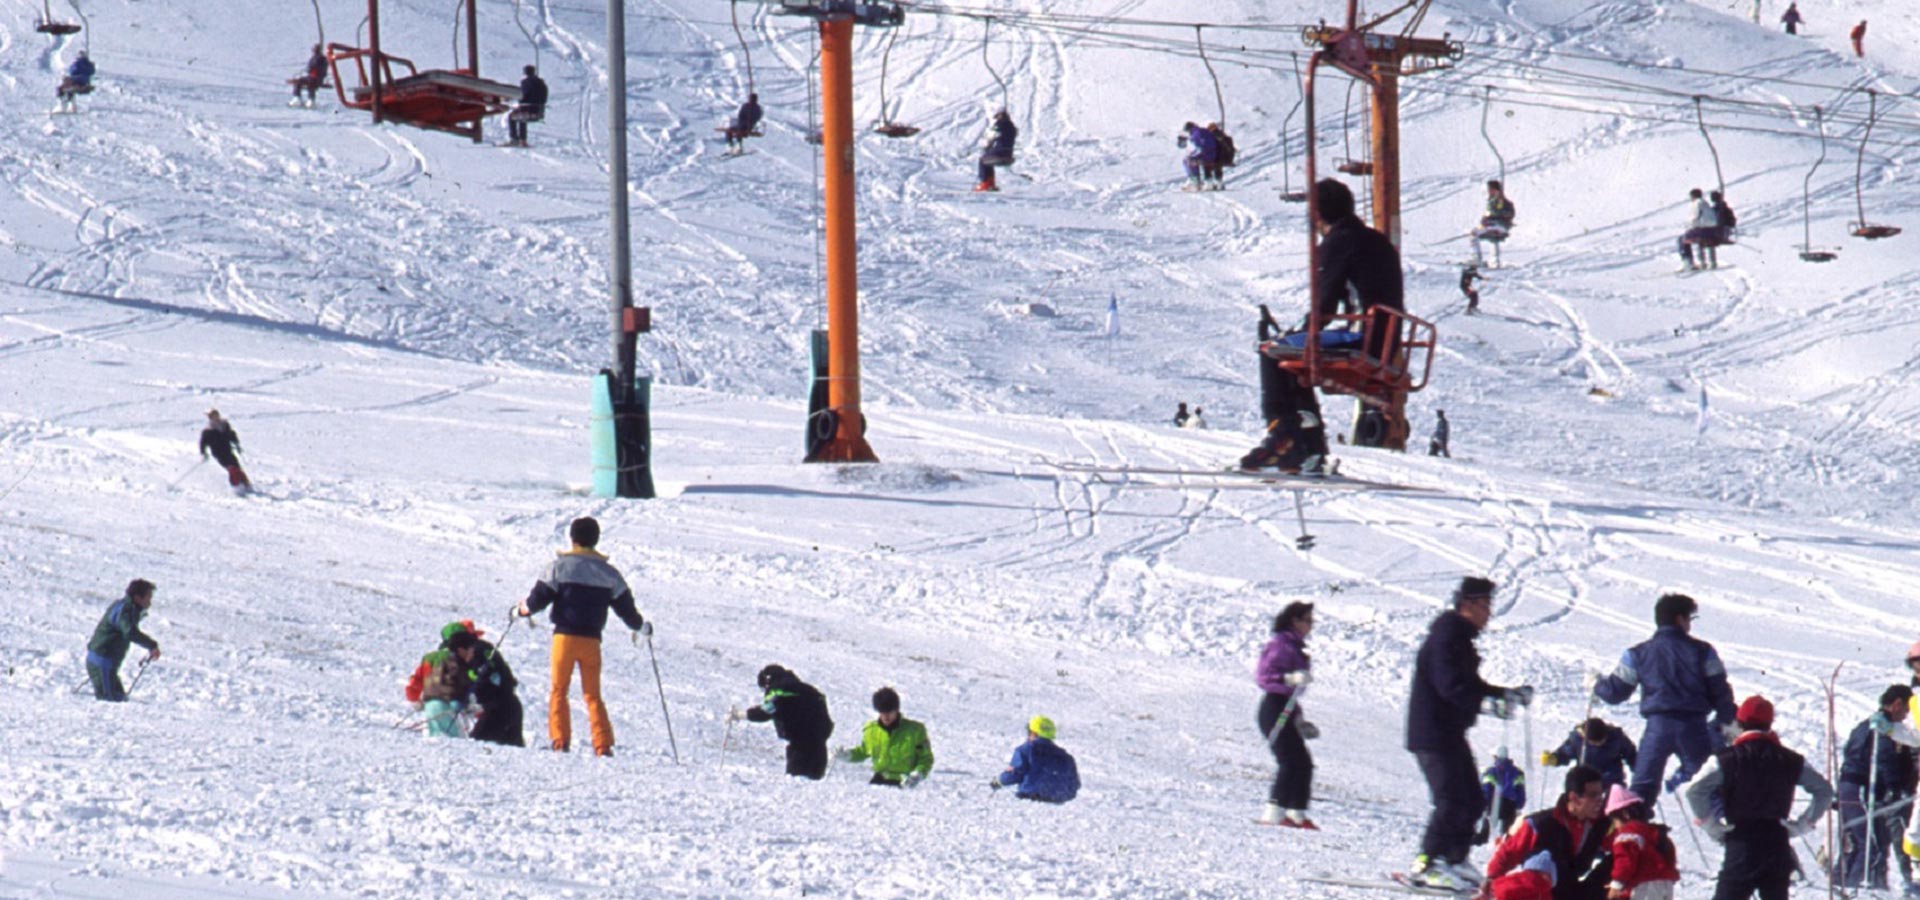 广岛县 县北的滑雪场